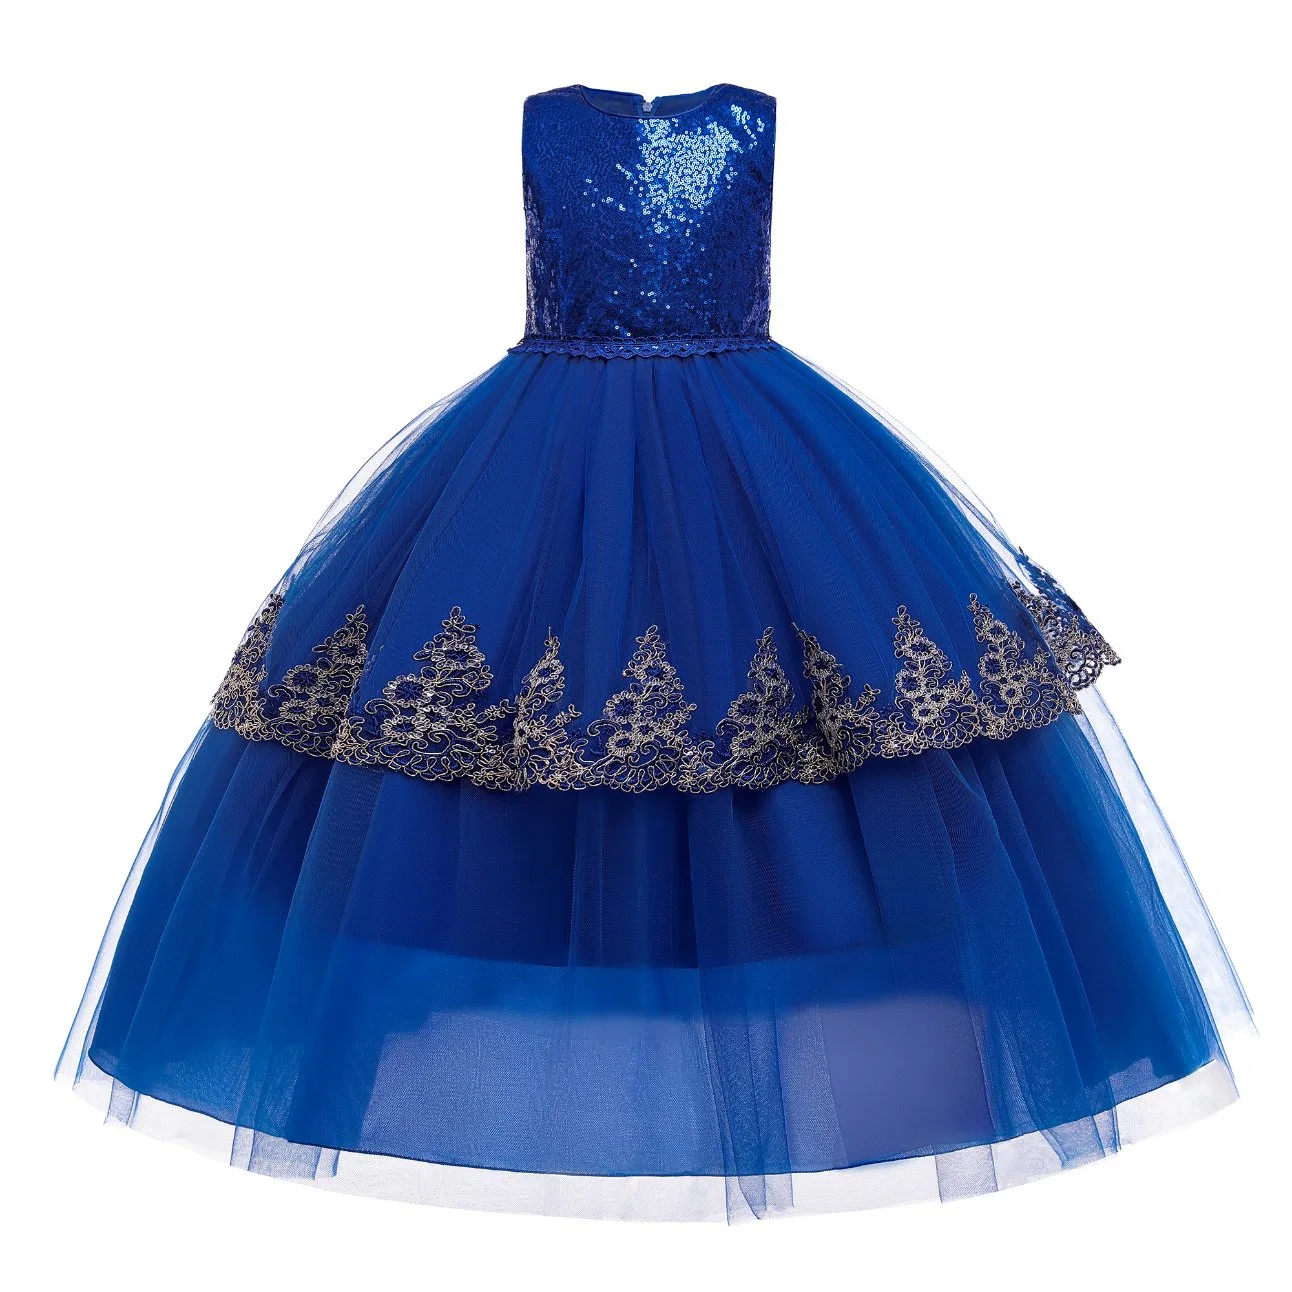 Children Apparel Baby Wear Girls Dress Party Garment Wedding Dress Ball Gown Princess Frock Sweet Lace Dress